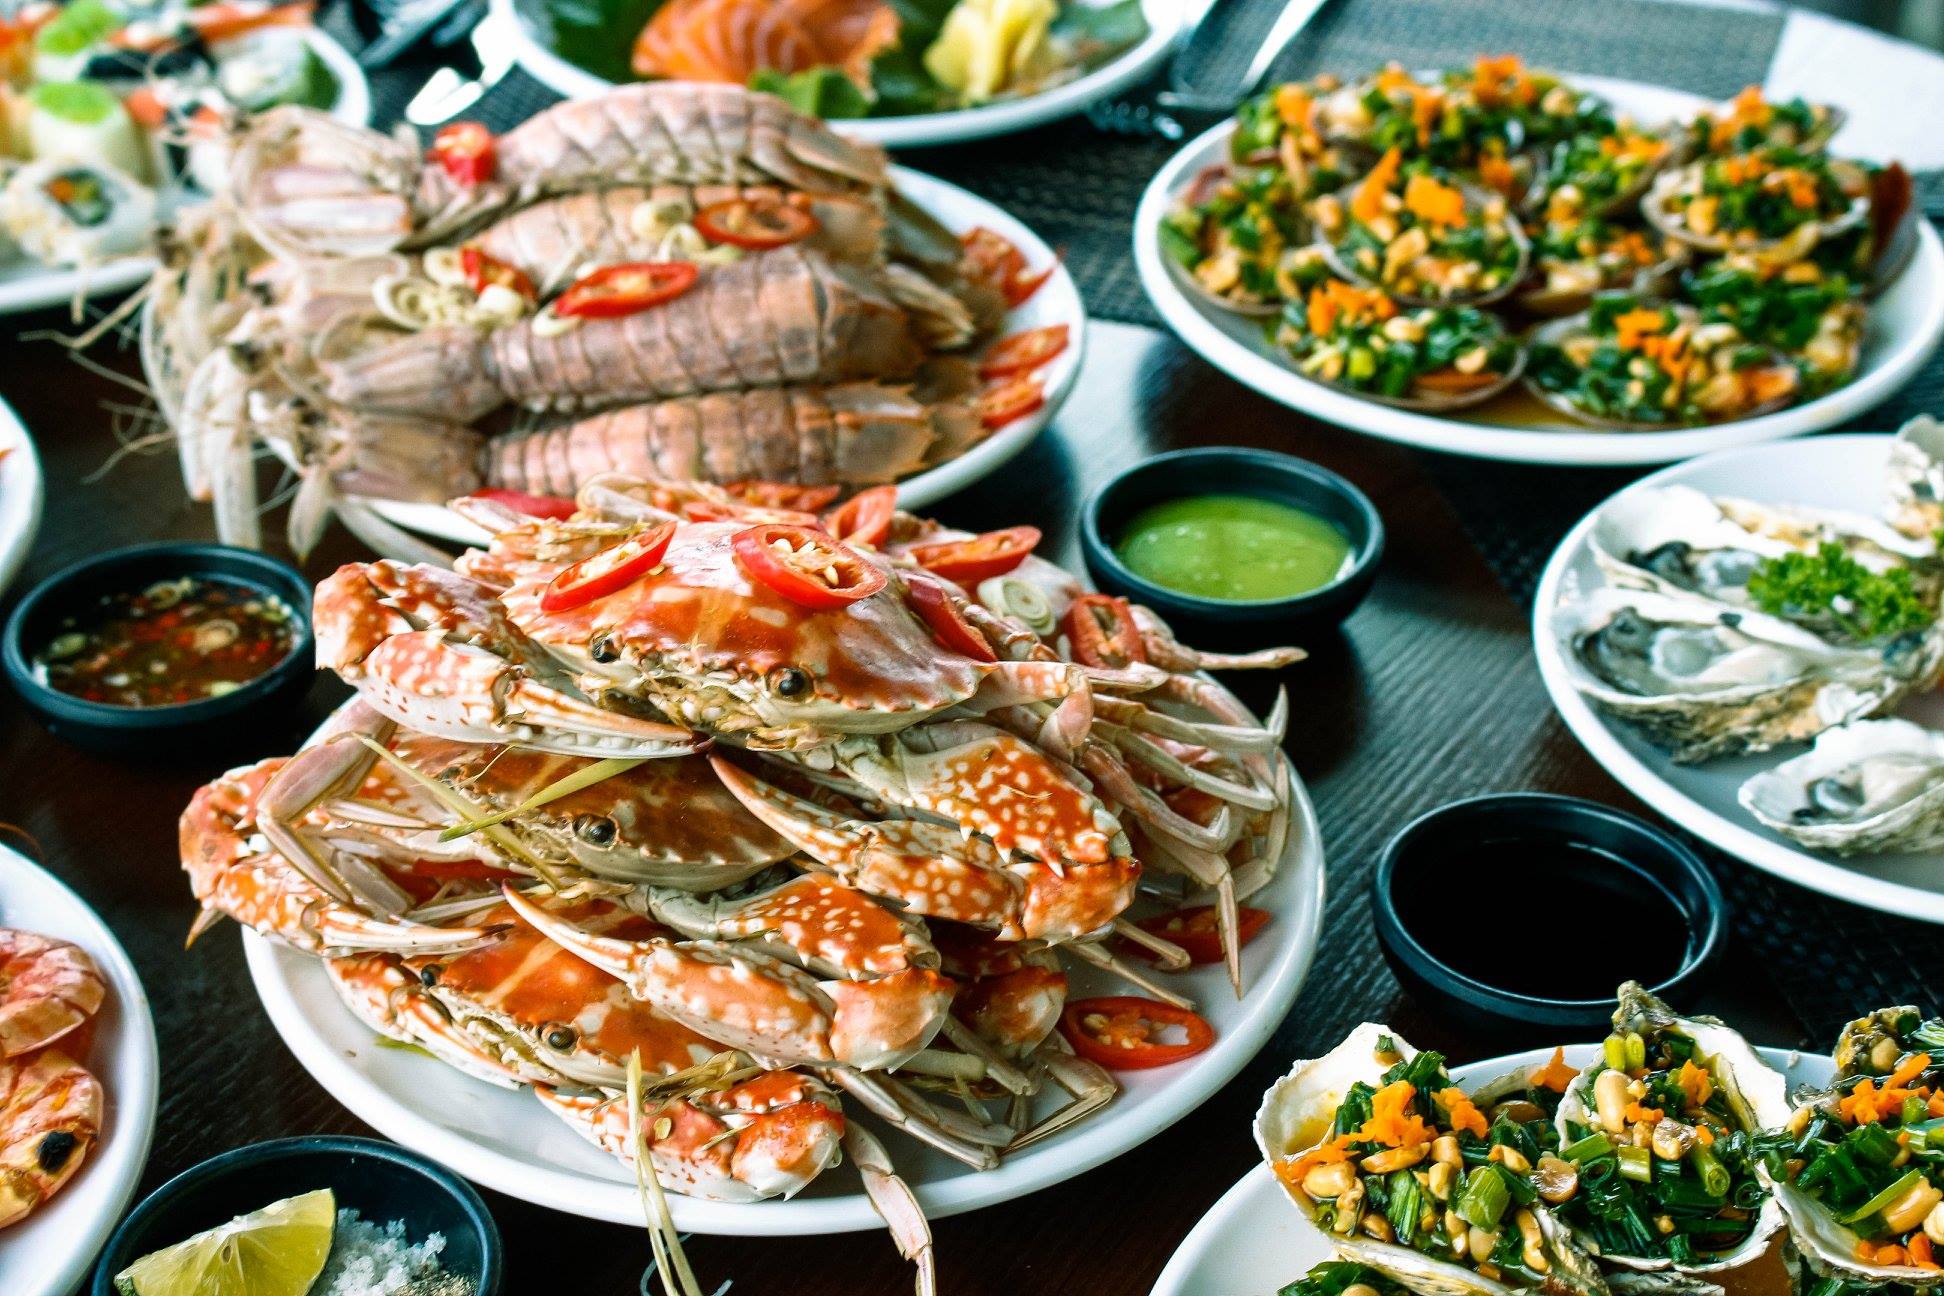 Hải sản Minh Lưu – Quán hải sản ở Đồng Hới nổi tiếng